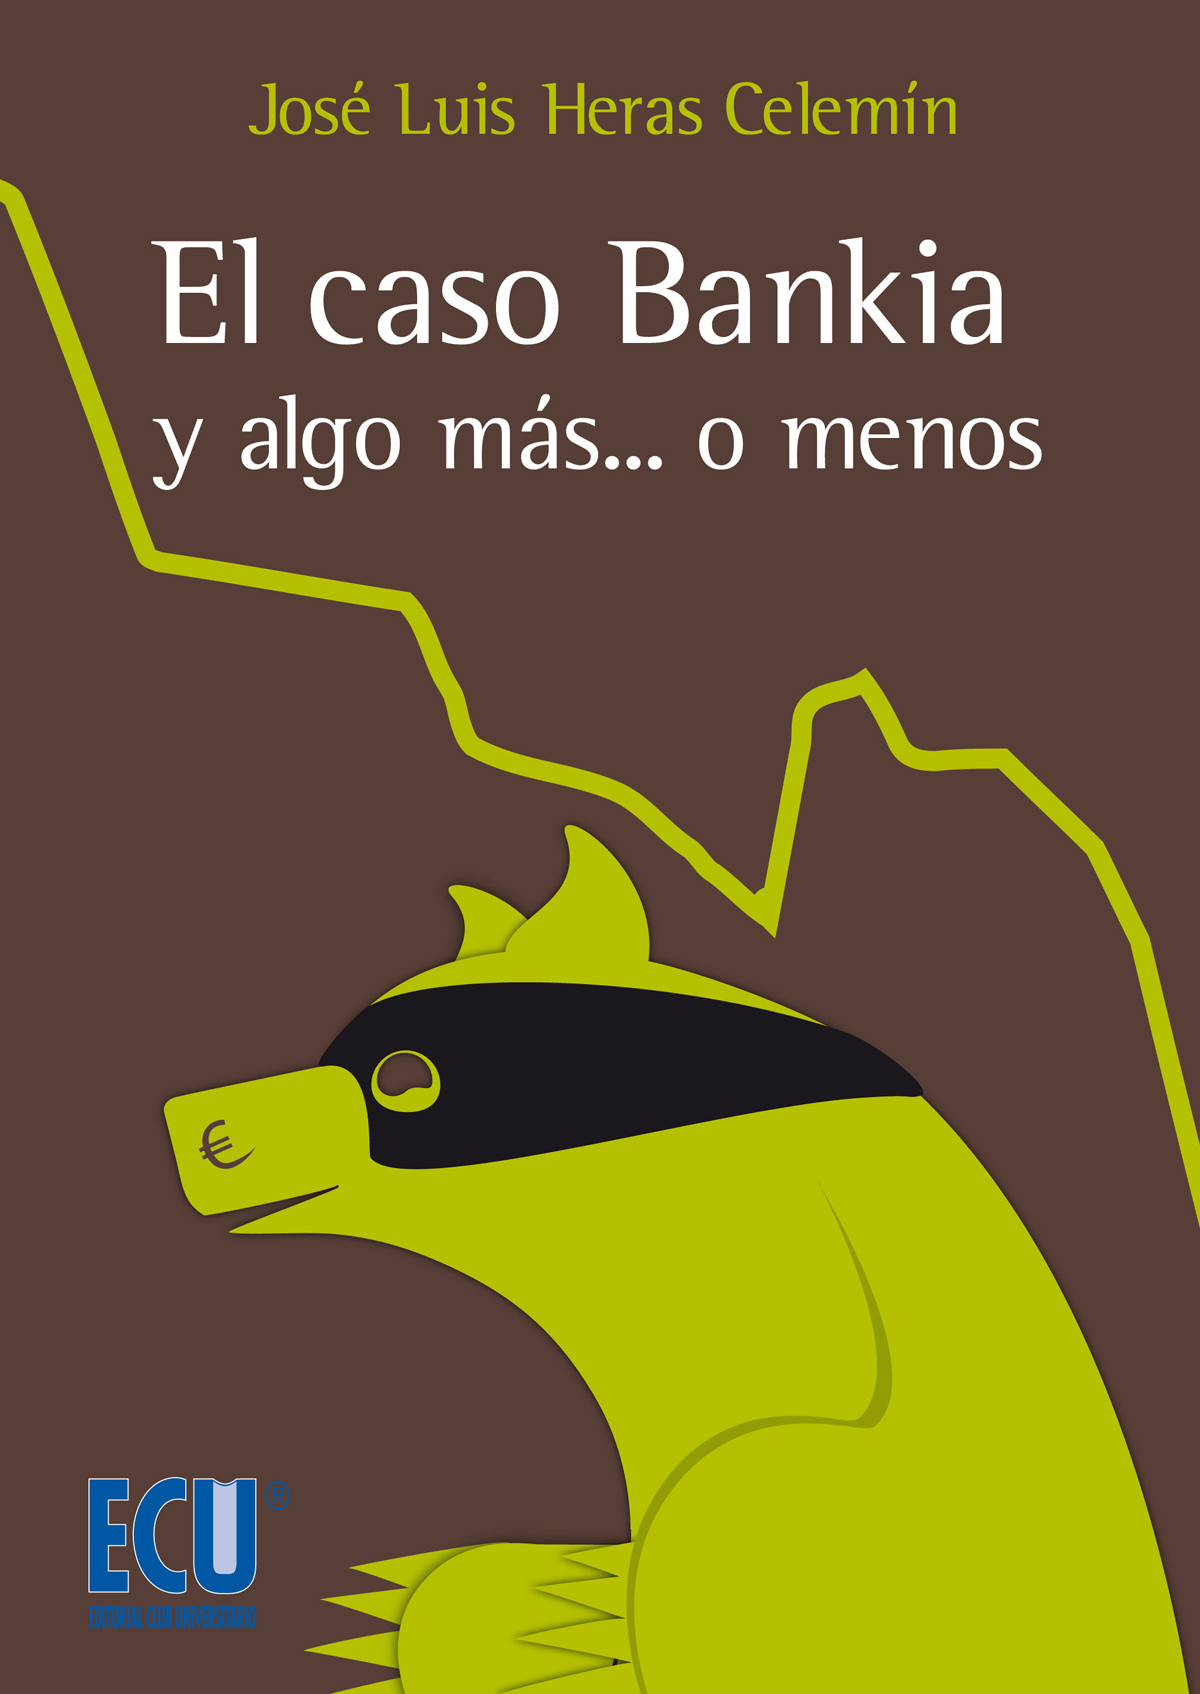 EL CASO BANKIA<BR>
y algo más… o menos